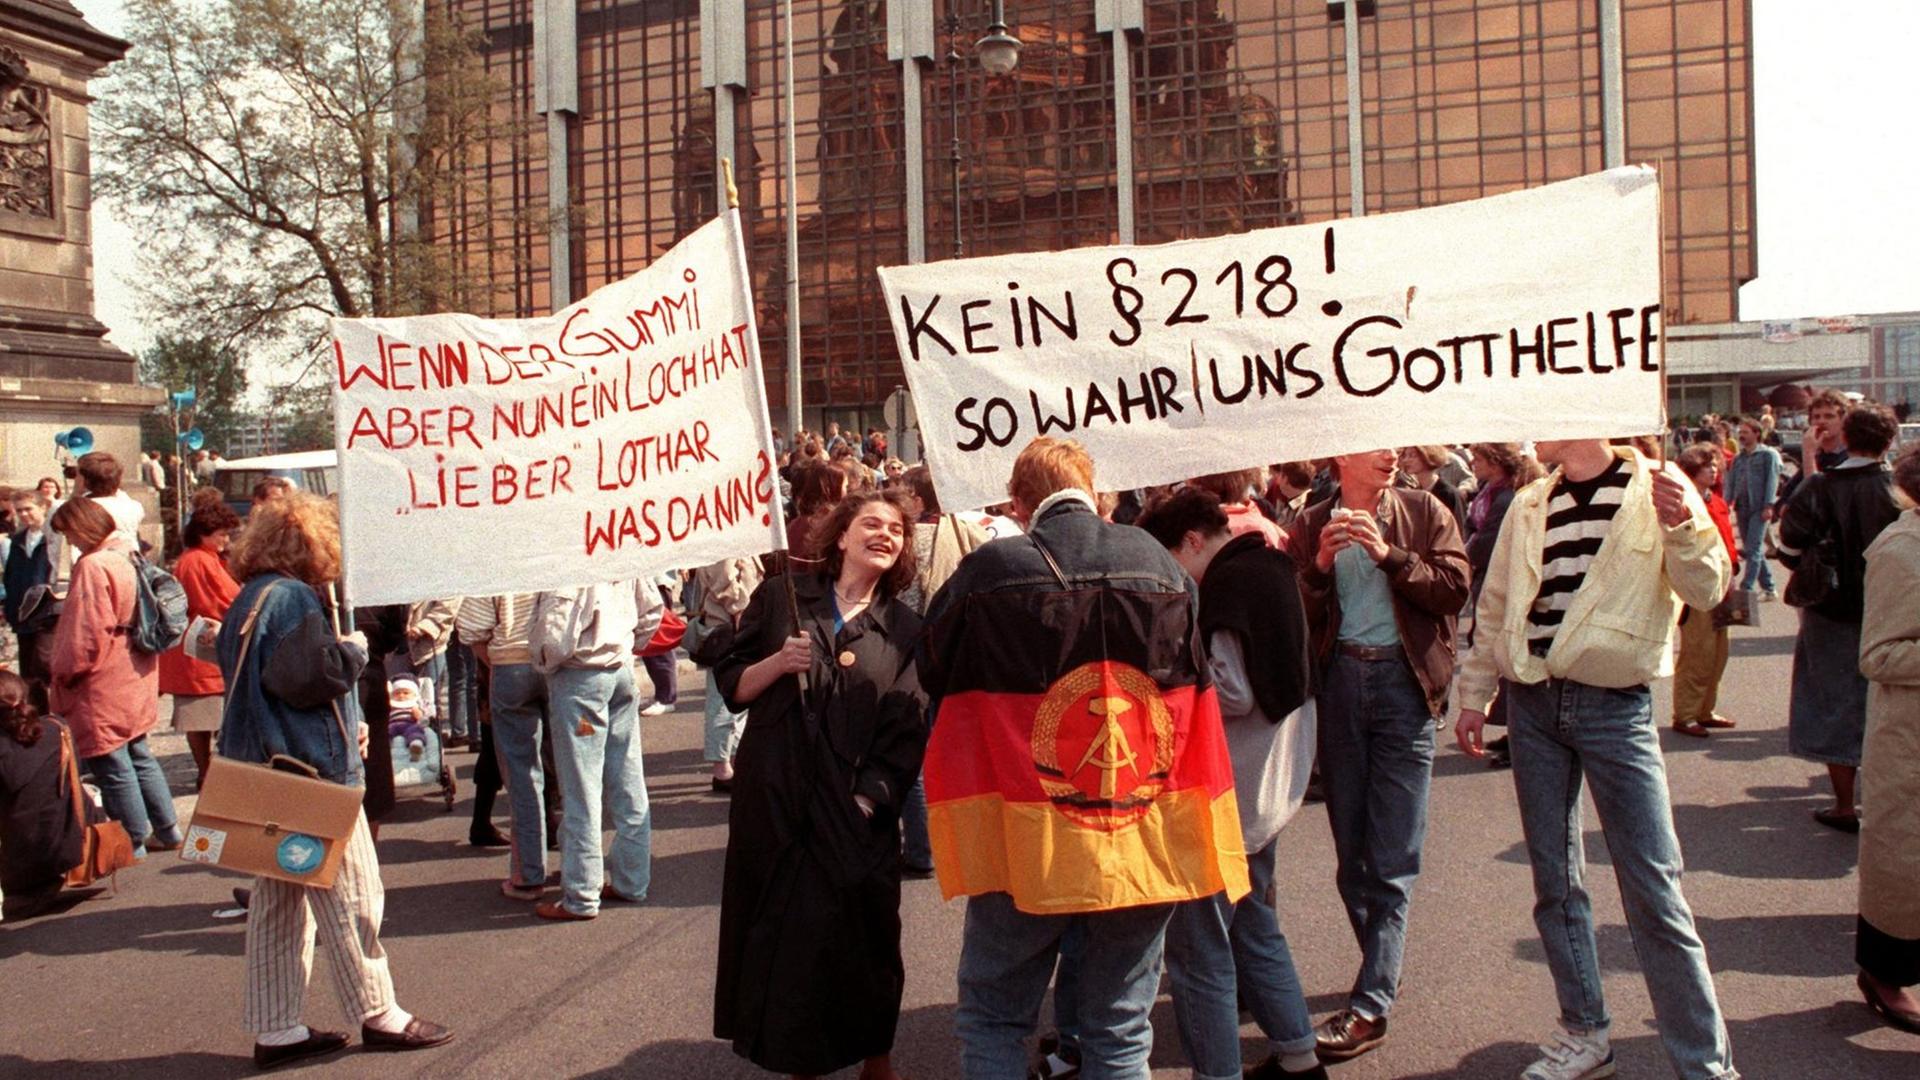 Protest am 22. April 1990 gegen eine Übernahme des bundesdeutschen Abtreibungsgesetzes Paragraph 218 vor der Volkskammer in Ost-Berlin. Mehrere Personen halten Transparente hoch.